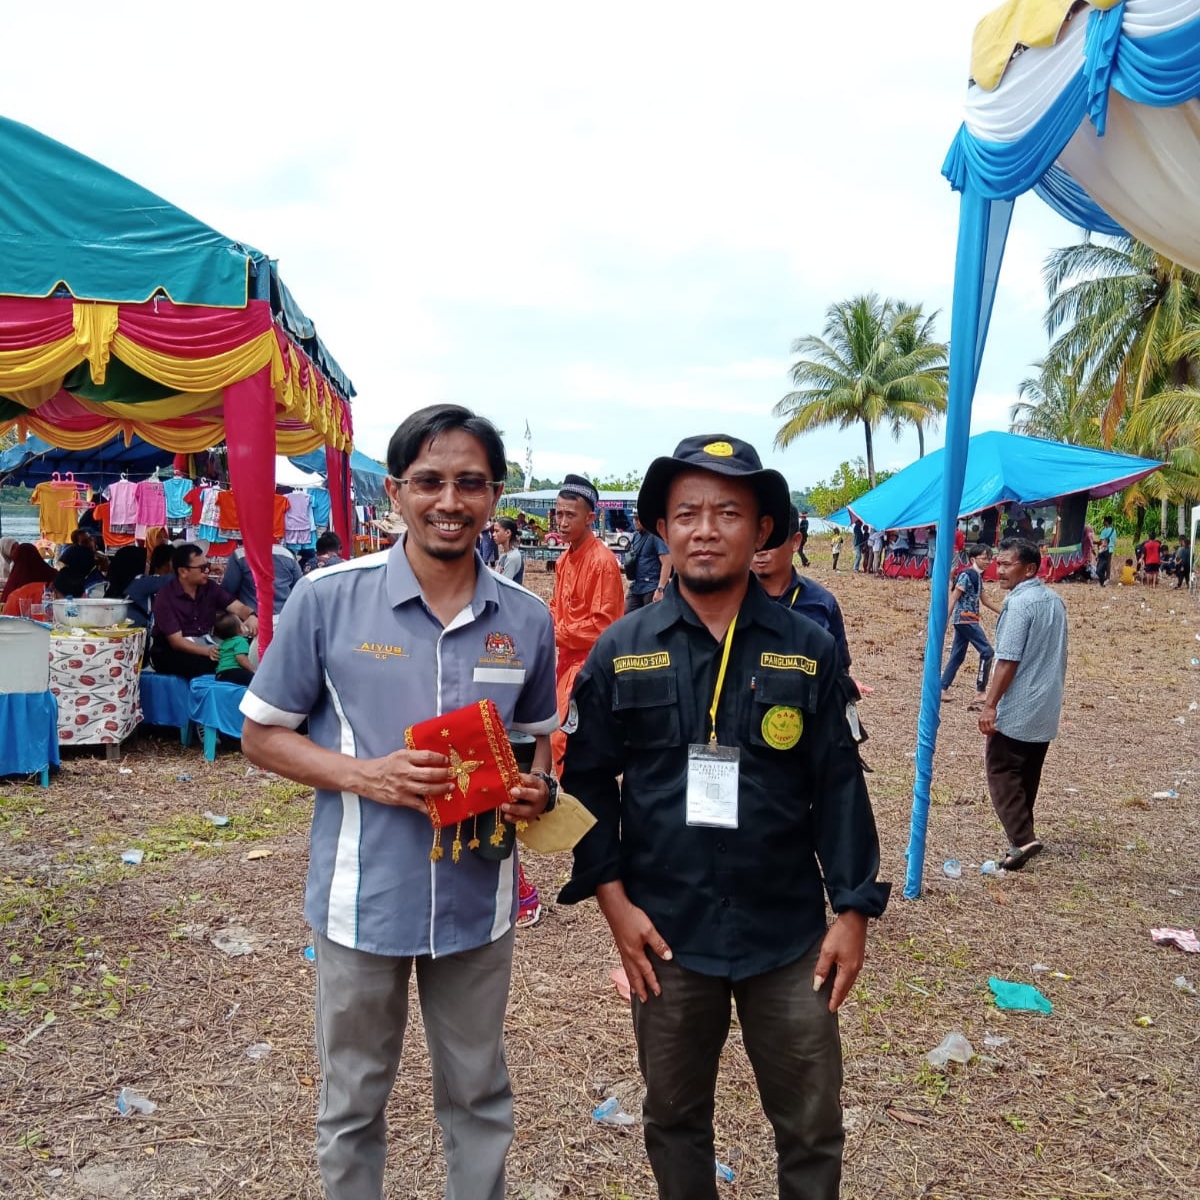 Img 20220628 203210 Event Ujung Batu Festival Di Aceh Singkil Mampu Tingkatkan Ukm Milik Masyarakat